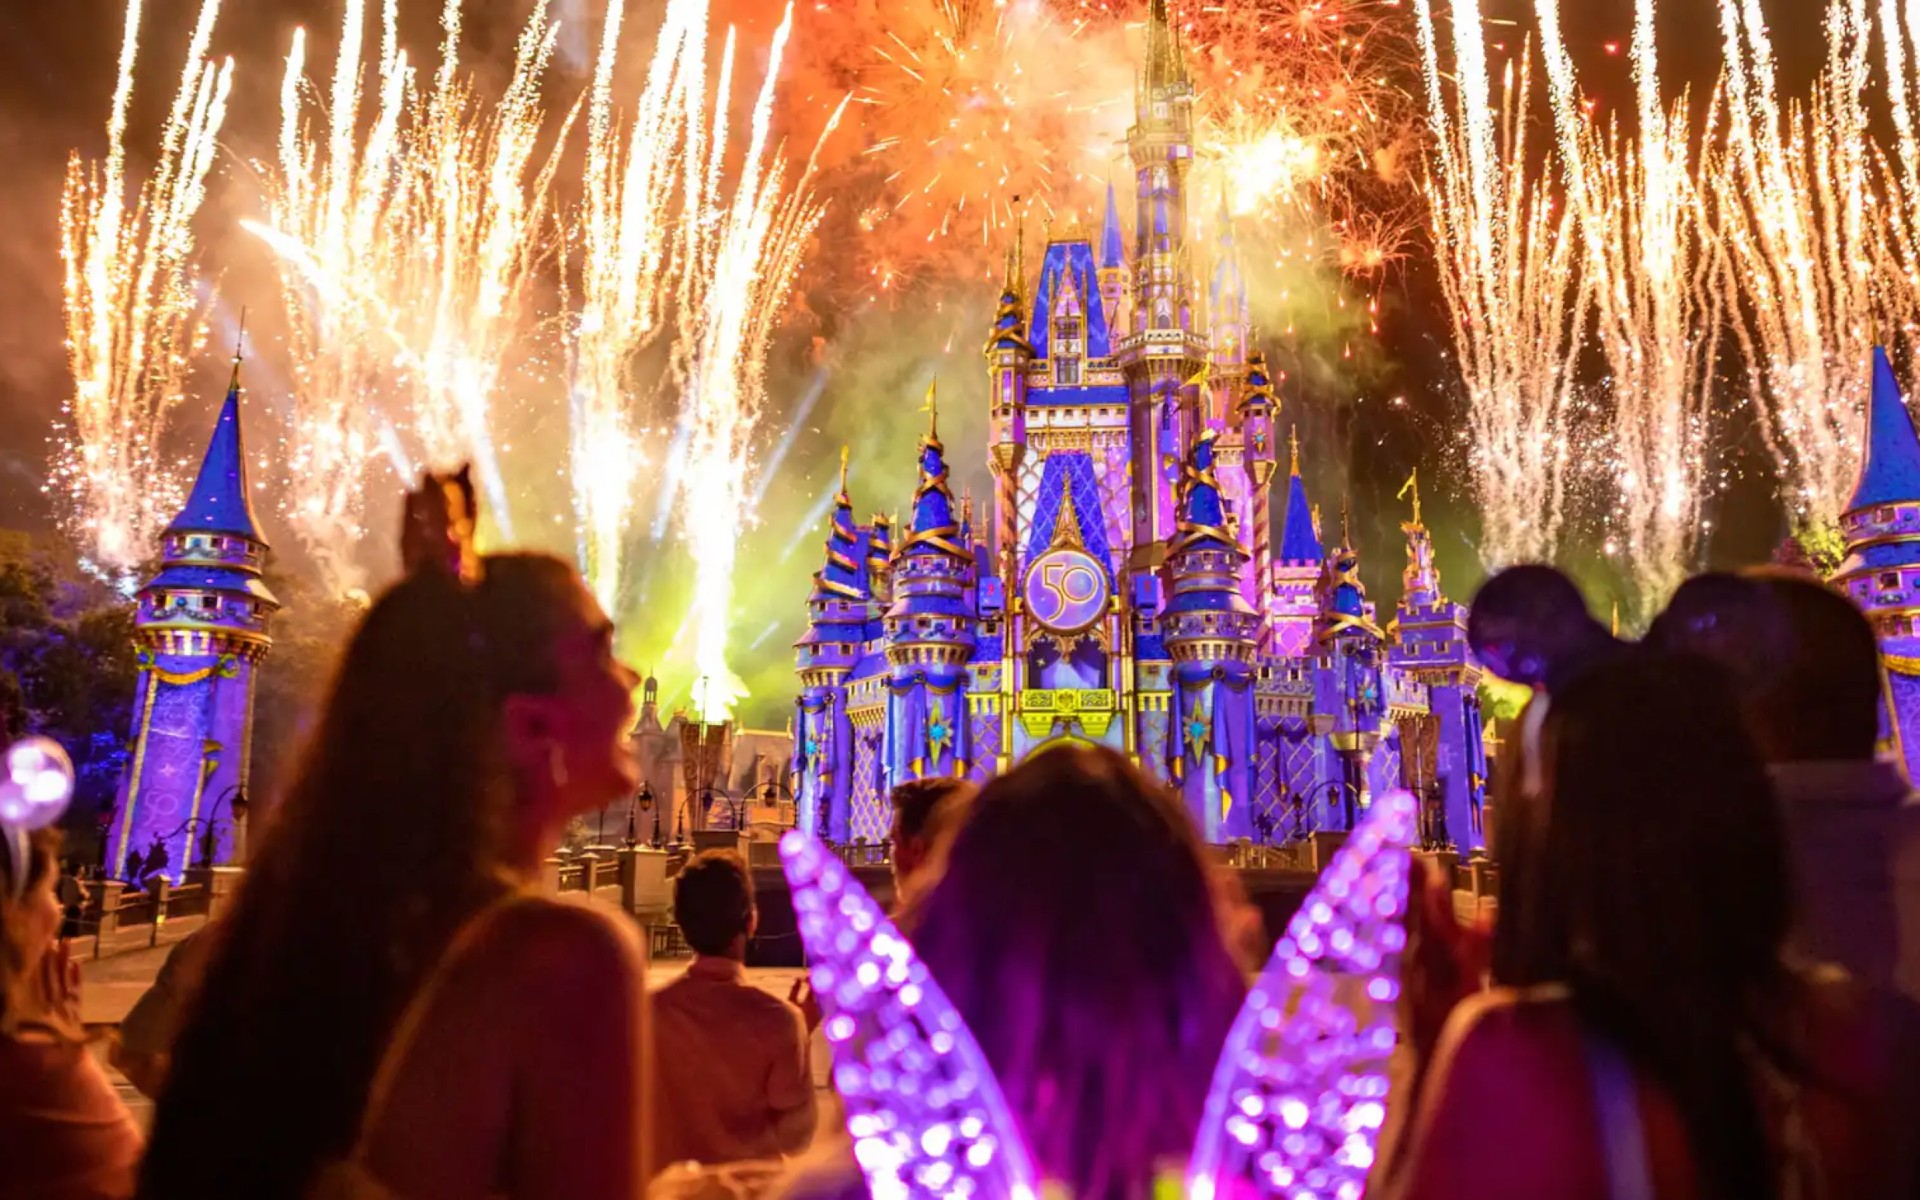 Walt Disney World Resort After Hours Events Return